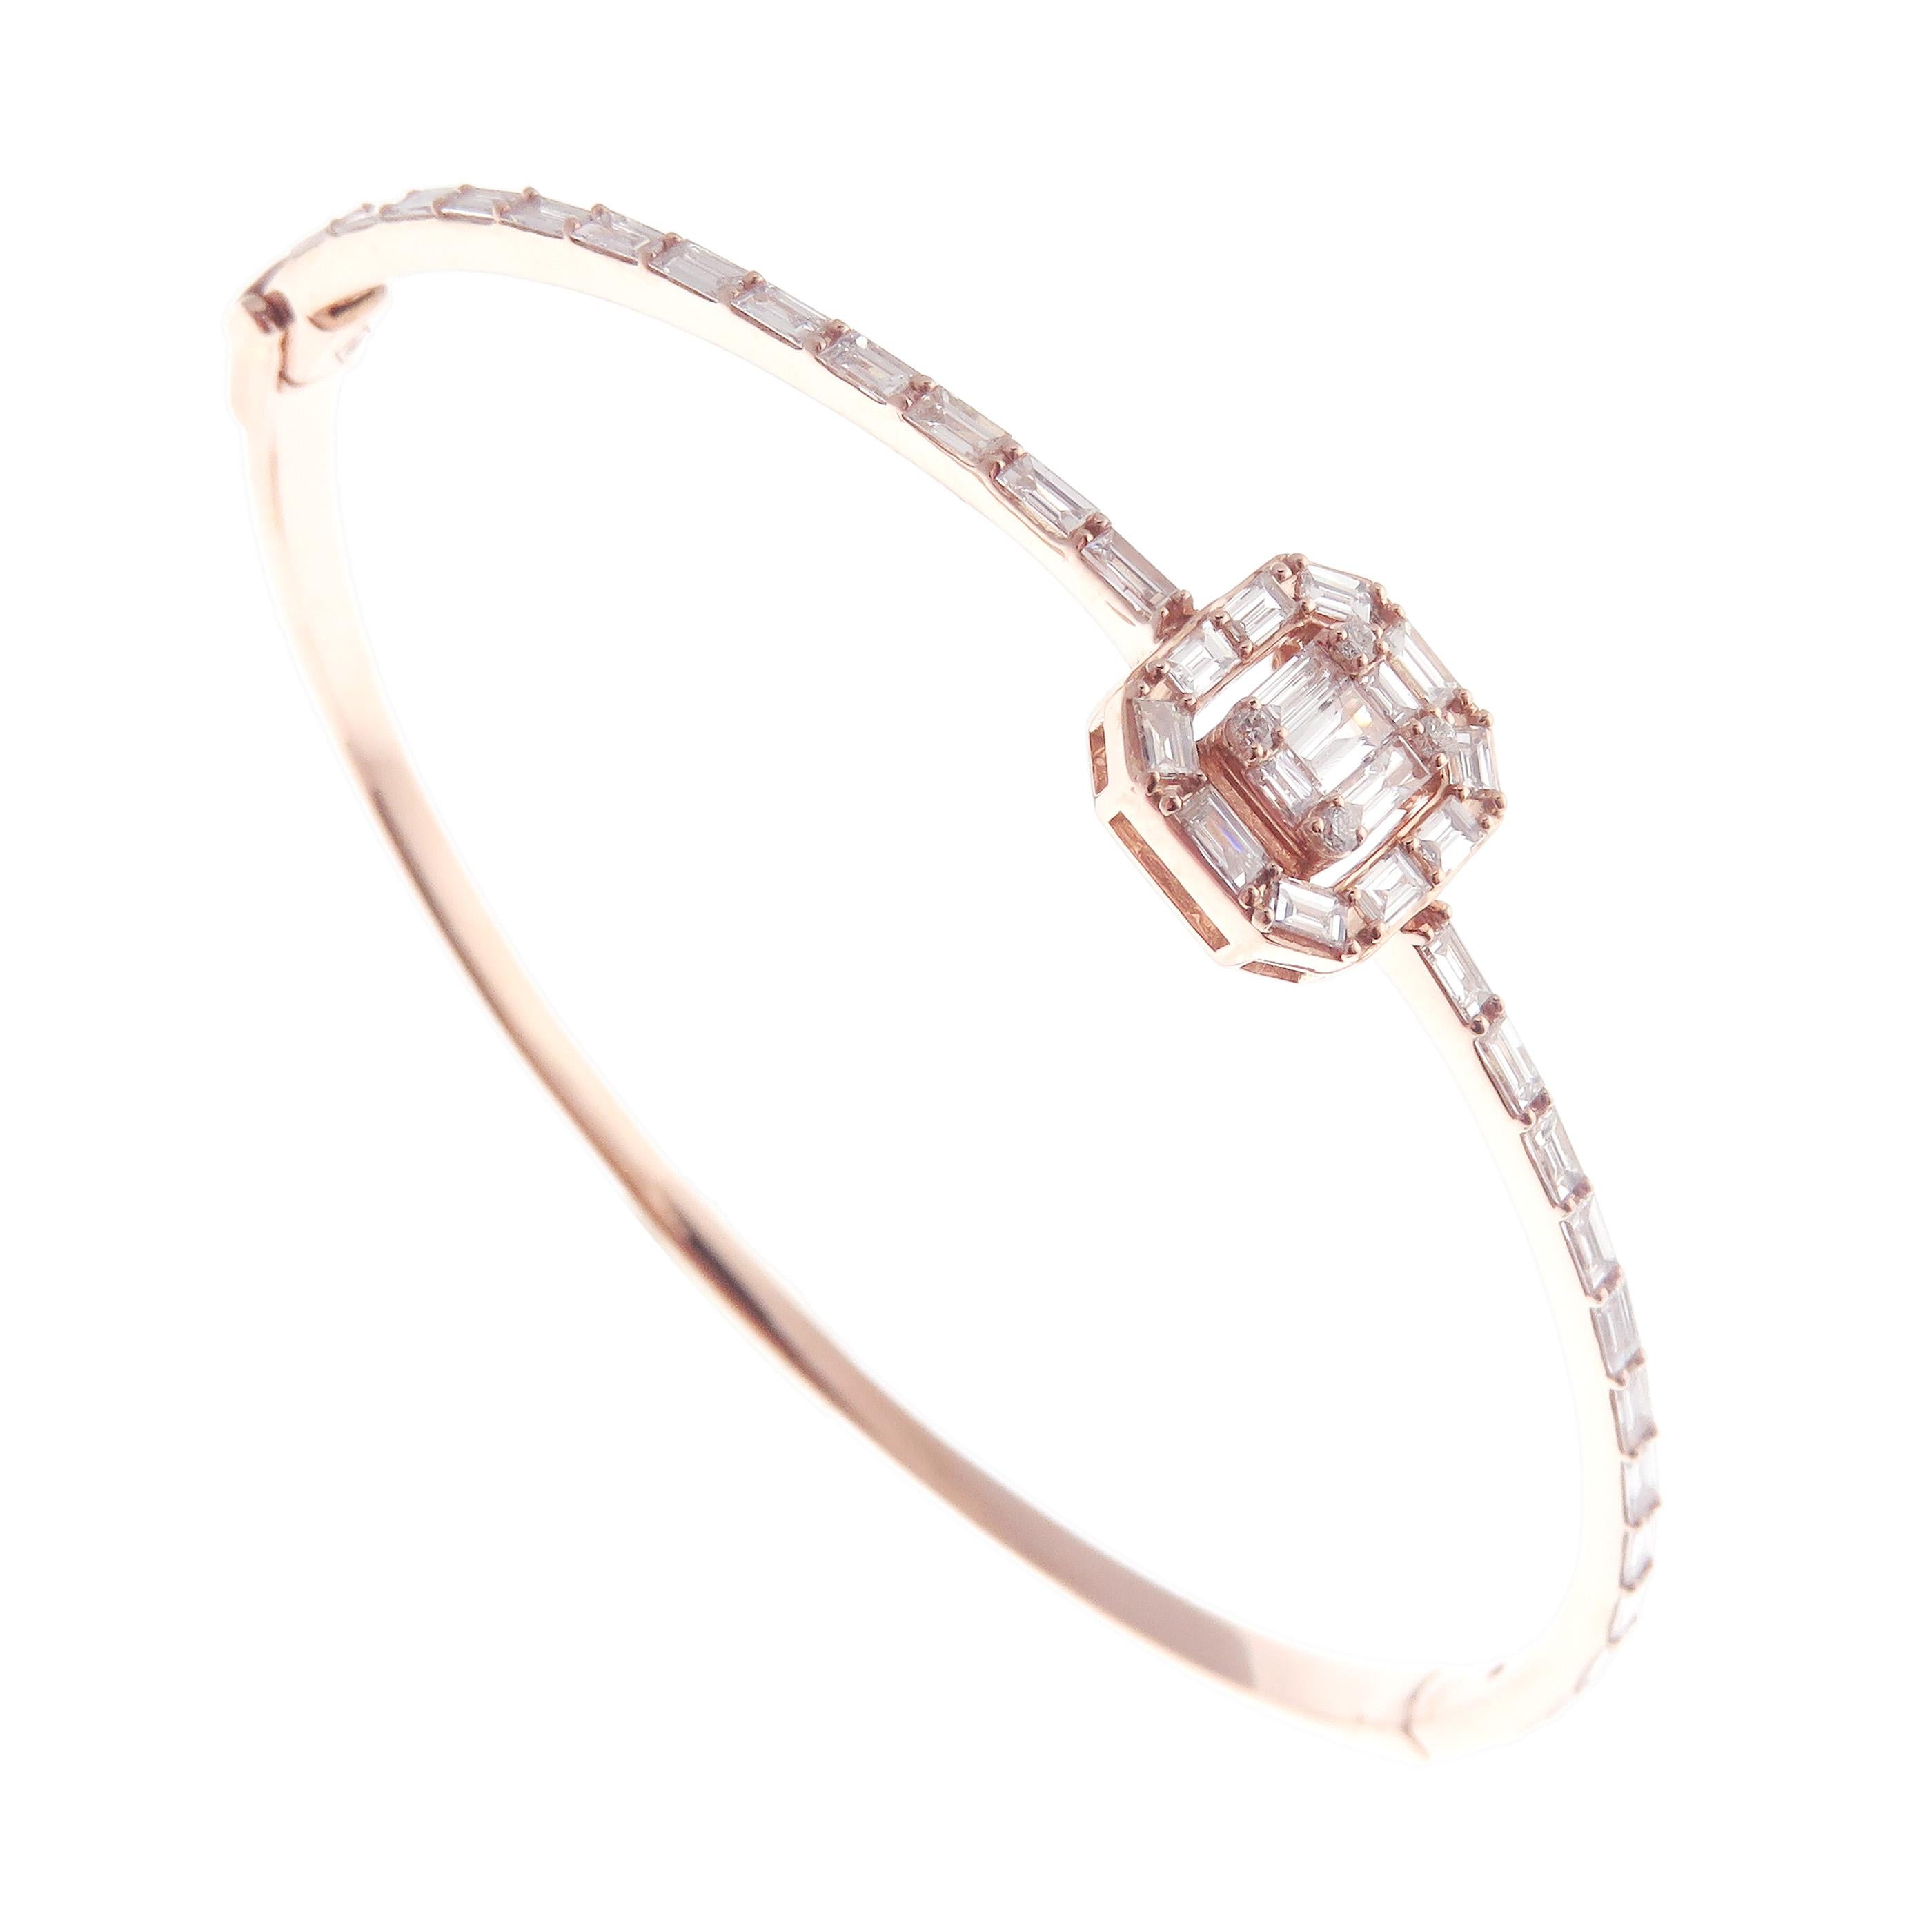 Ce délicat bracelet baguette carré est réalisé en or rose 18 carats et pèse environ 1,35 carats de diamant blanc de qualité V. Il est composé d'une seule pièce. Fermeture par un fermoir latéral.  

Convient aux poignets jusqu'à 6,75